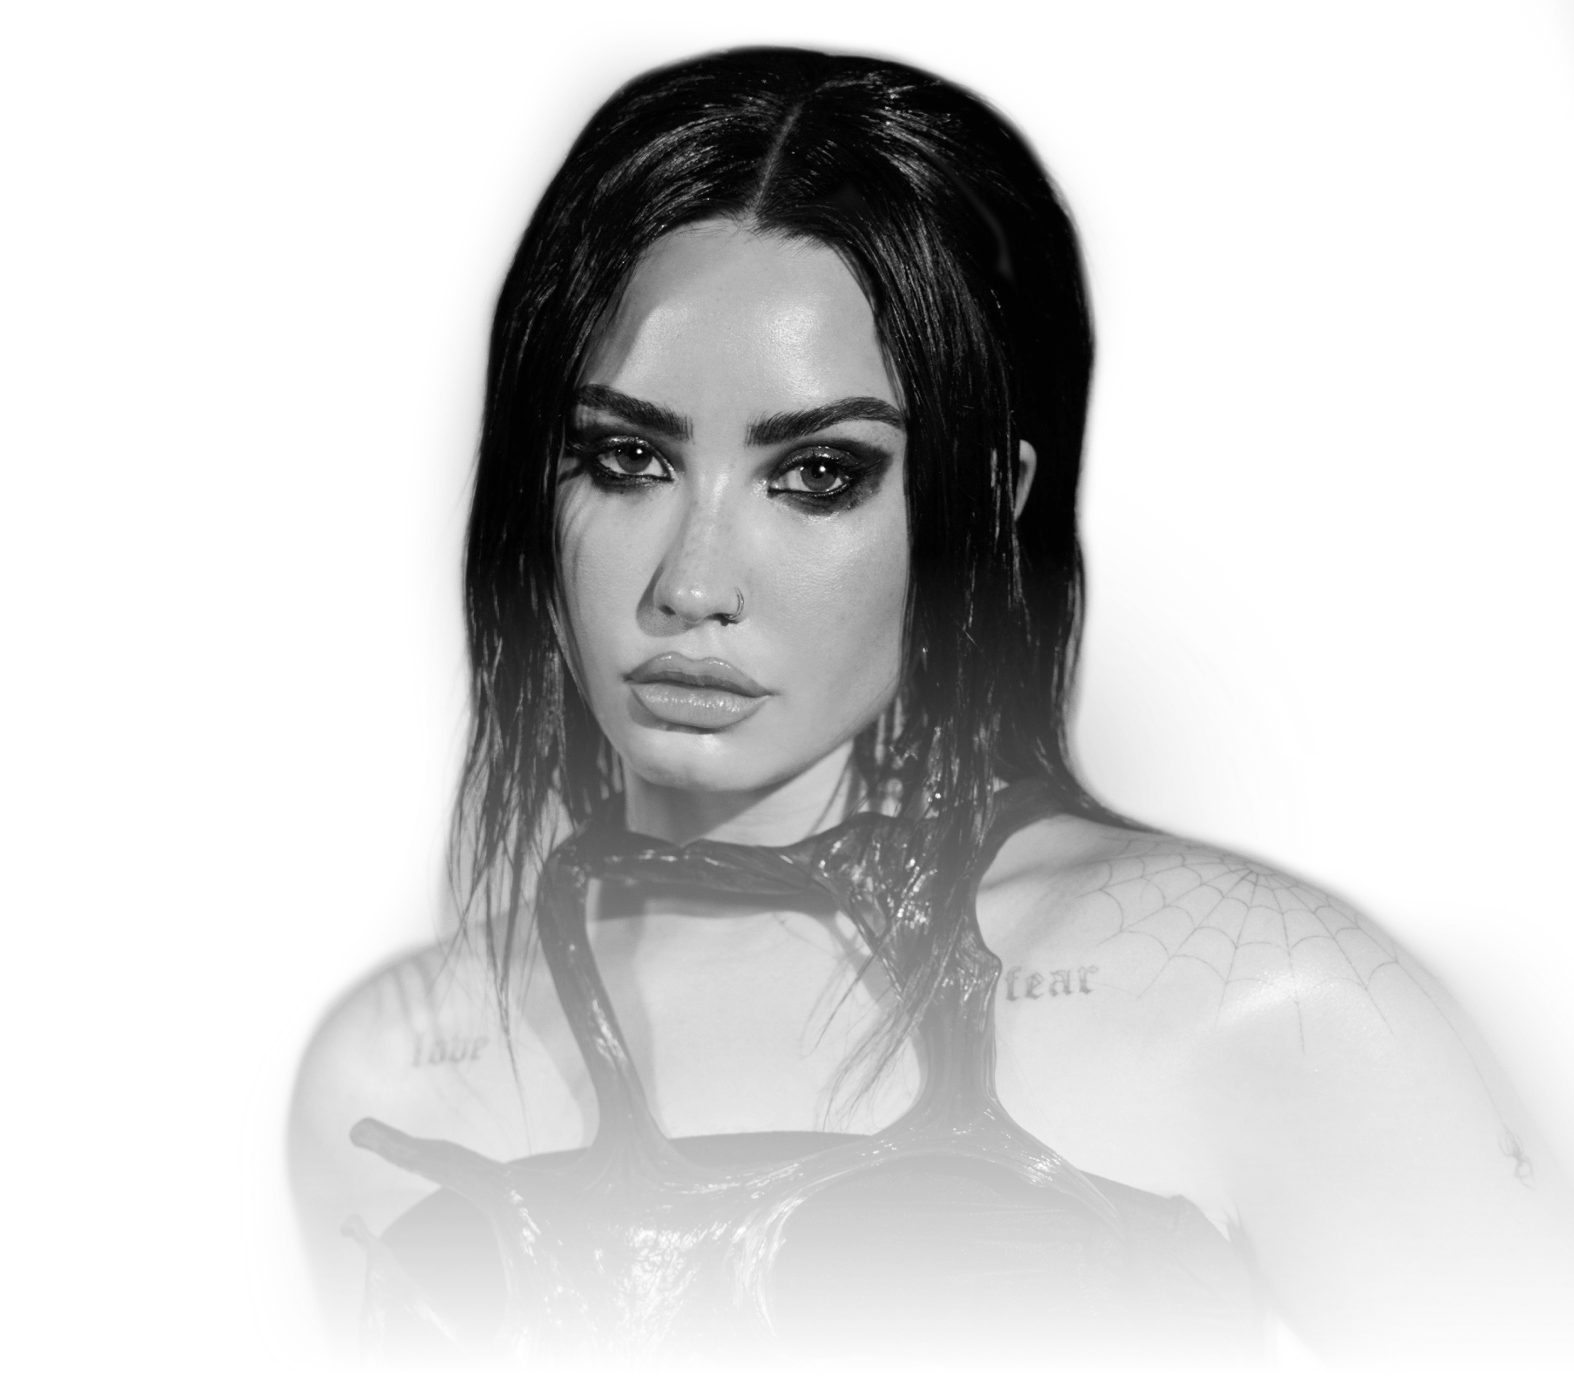 Demi Lovato - Still Alive (From the Original Motion Picture Scream